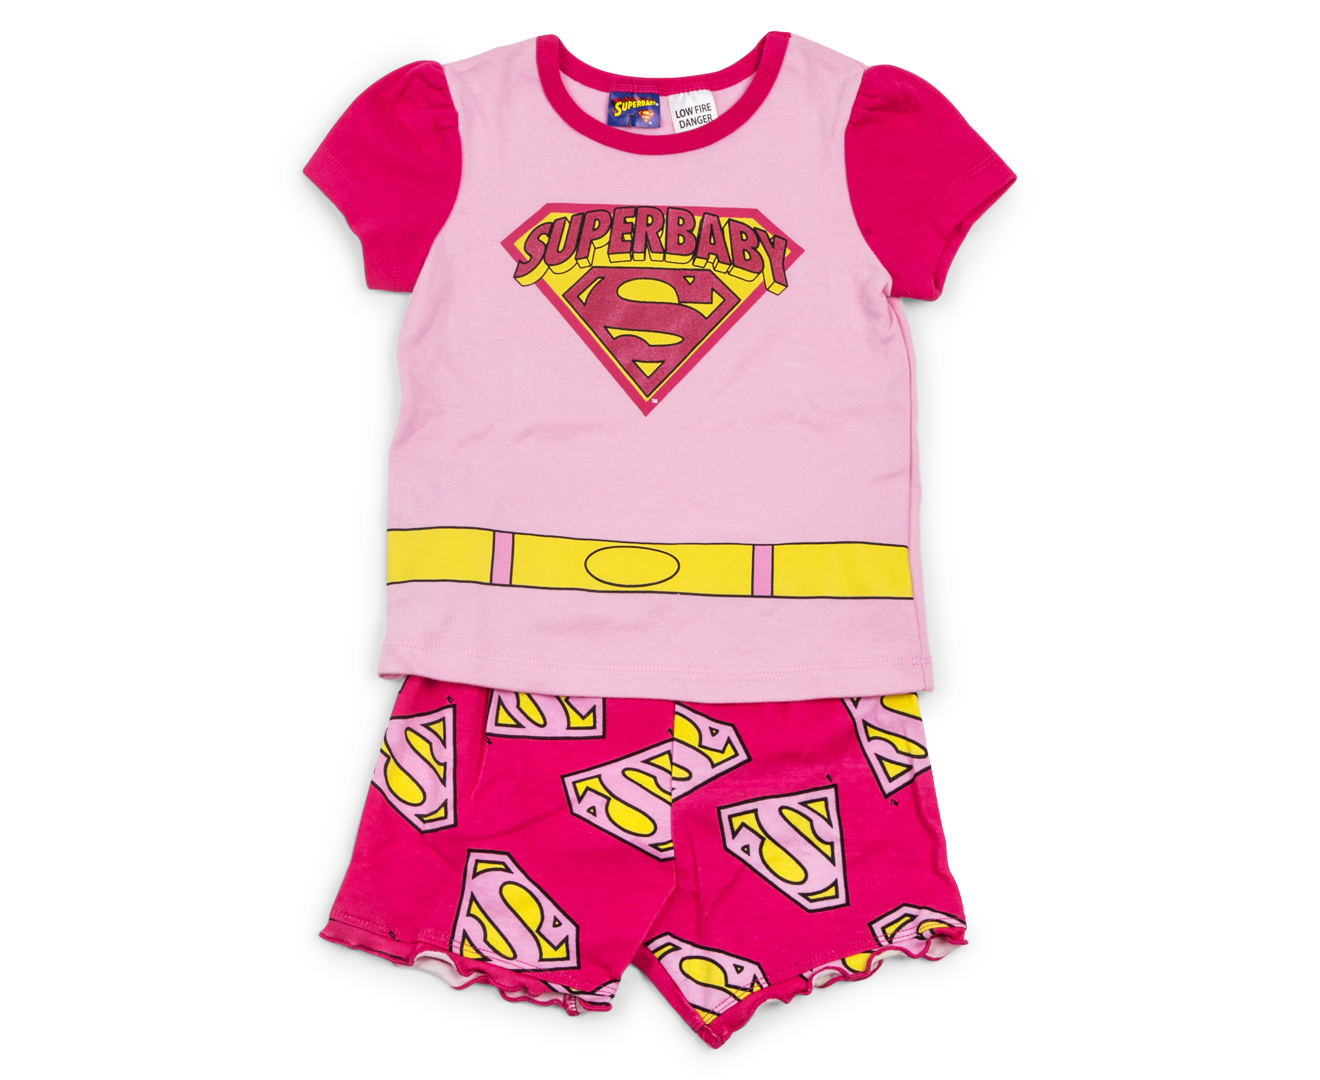 Superbaby PJ Set - Pink/Yellow